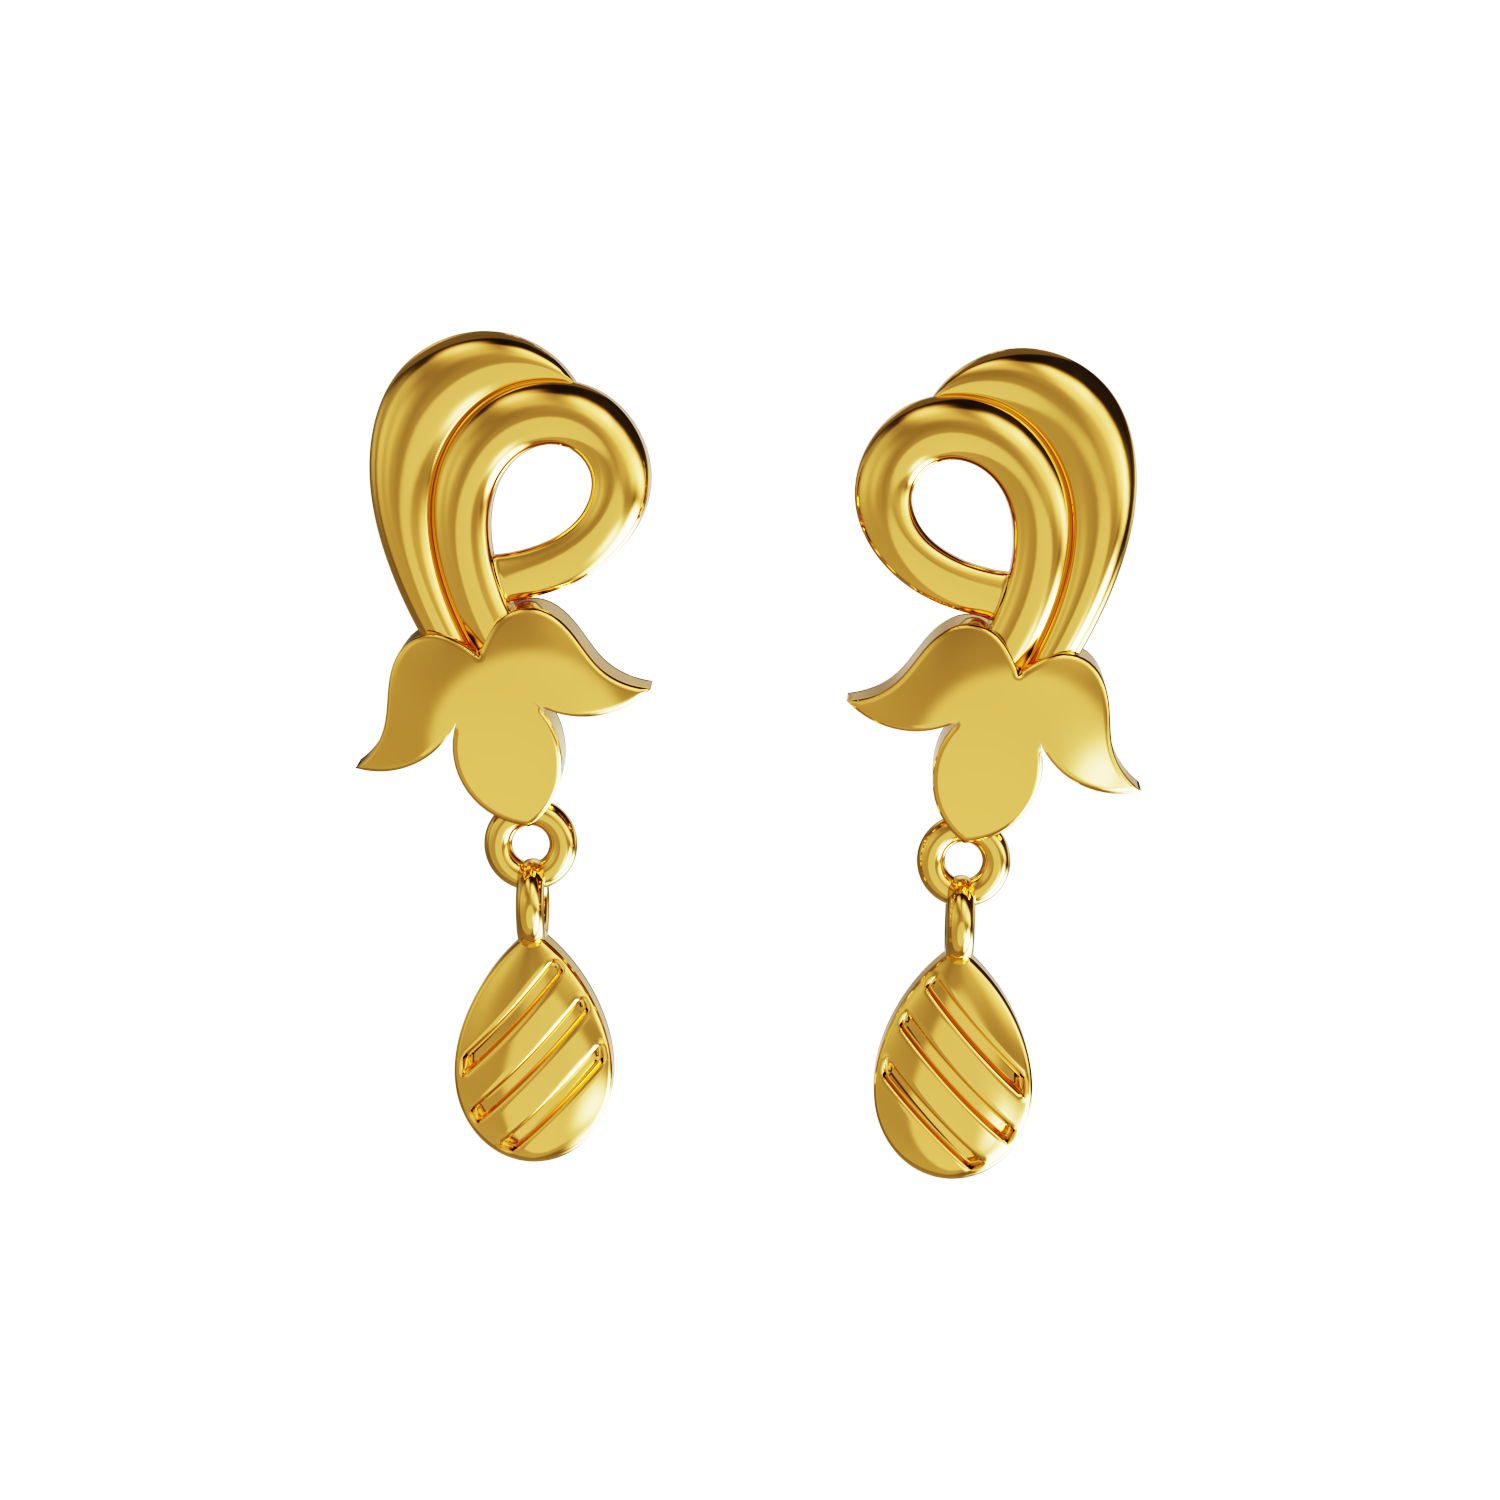 77 Small earrings ideas | small earrings, gold earrings designs, earrings-vietvuevent.vn